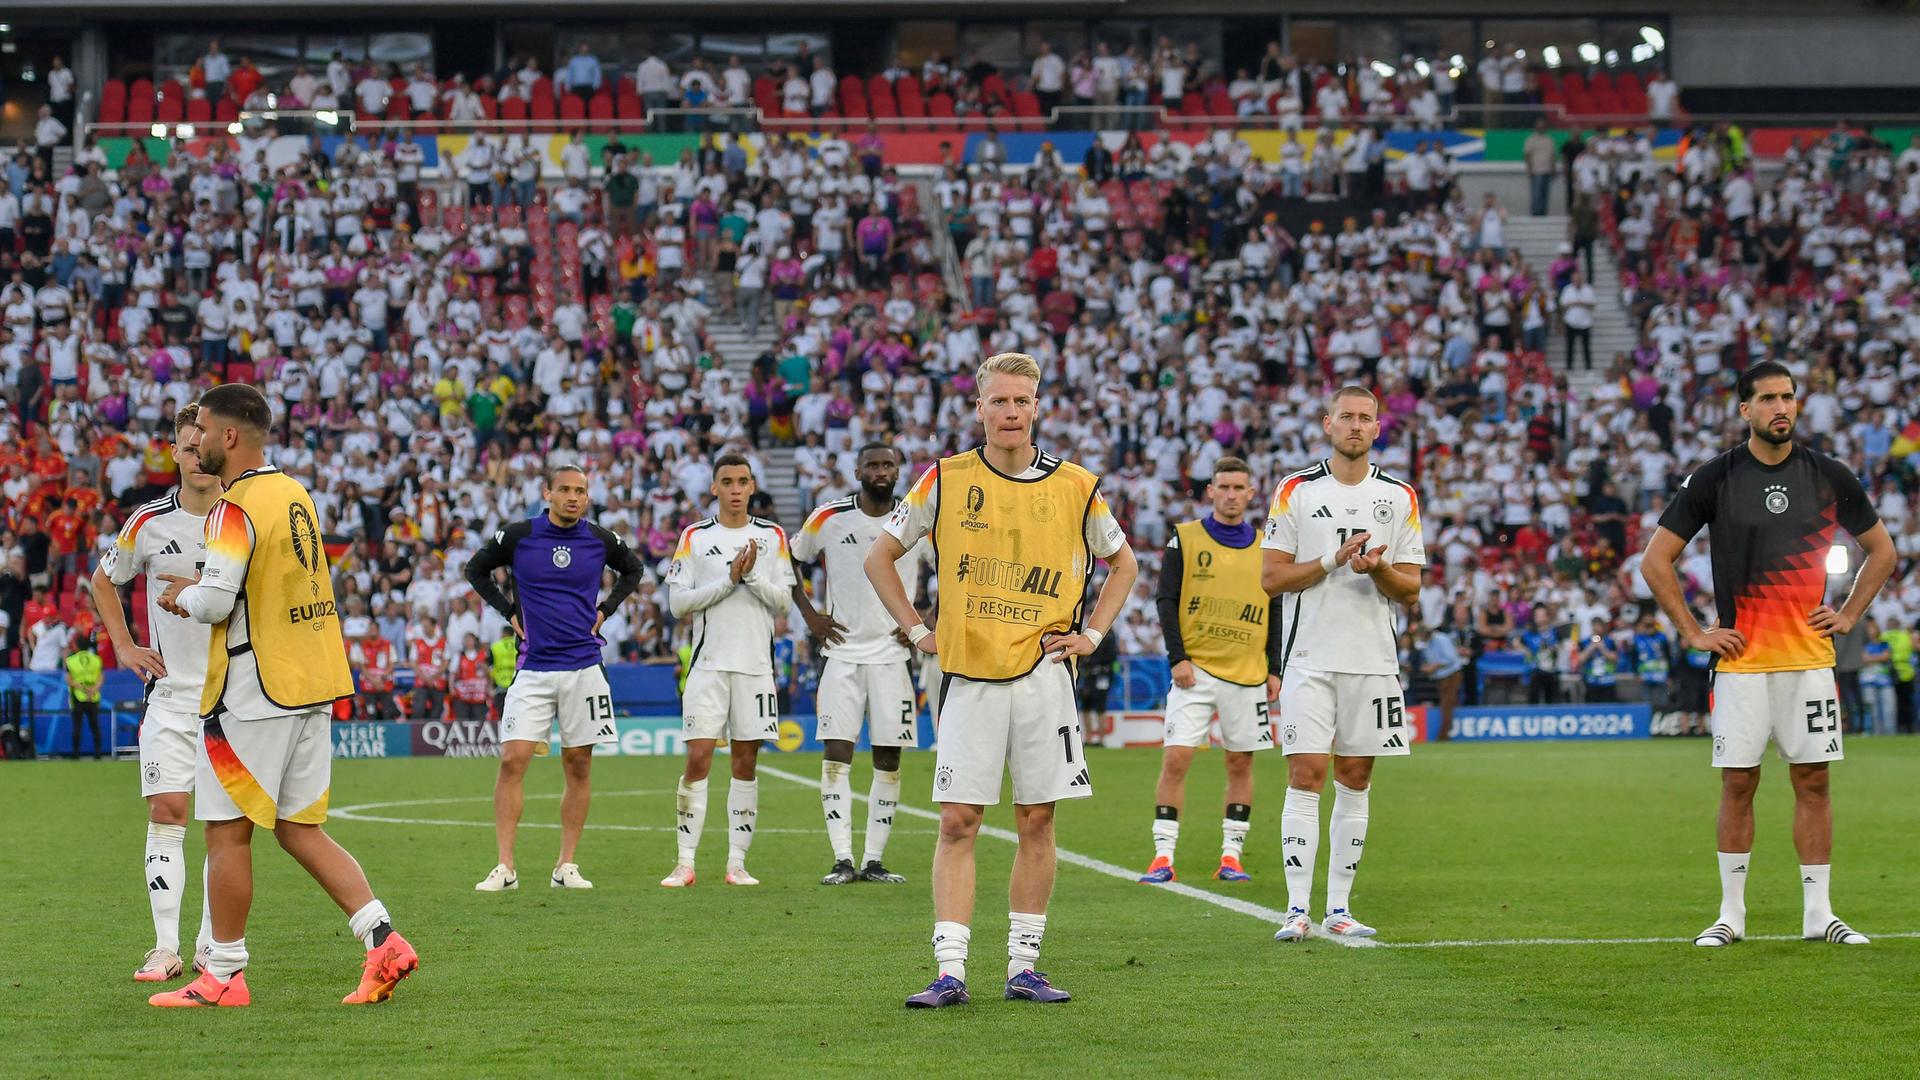 Spieler der deutschen Nationalmannschaft stehen auf dem Spielfeld in Stuttgart und schauen enttäuscht.
      